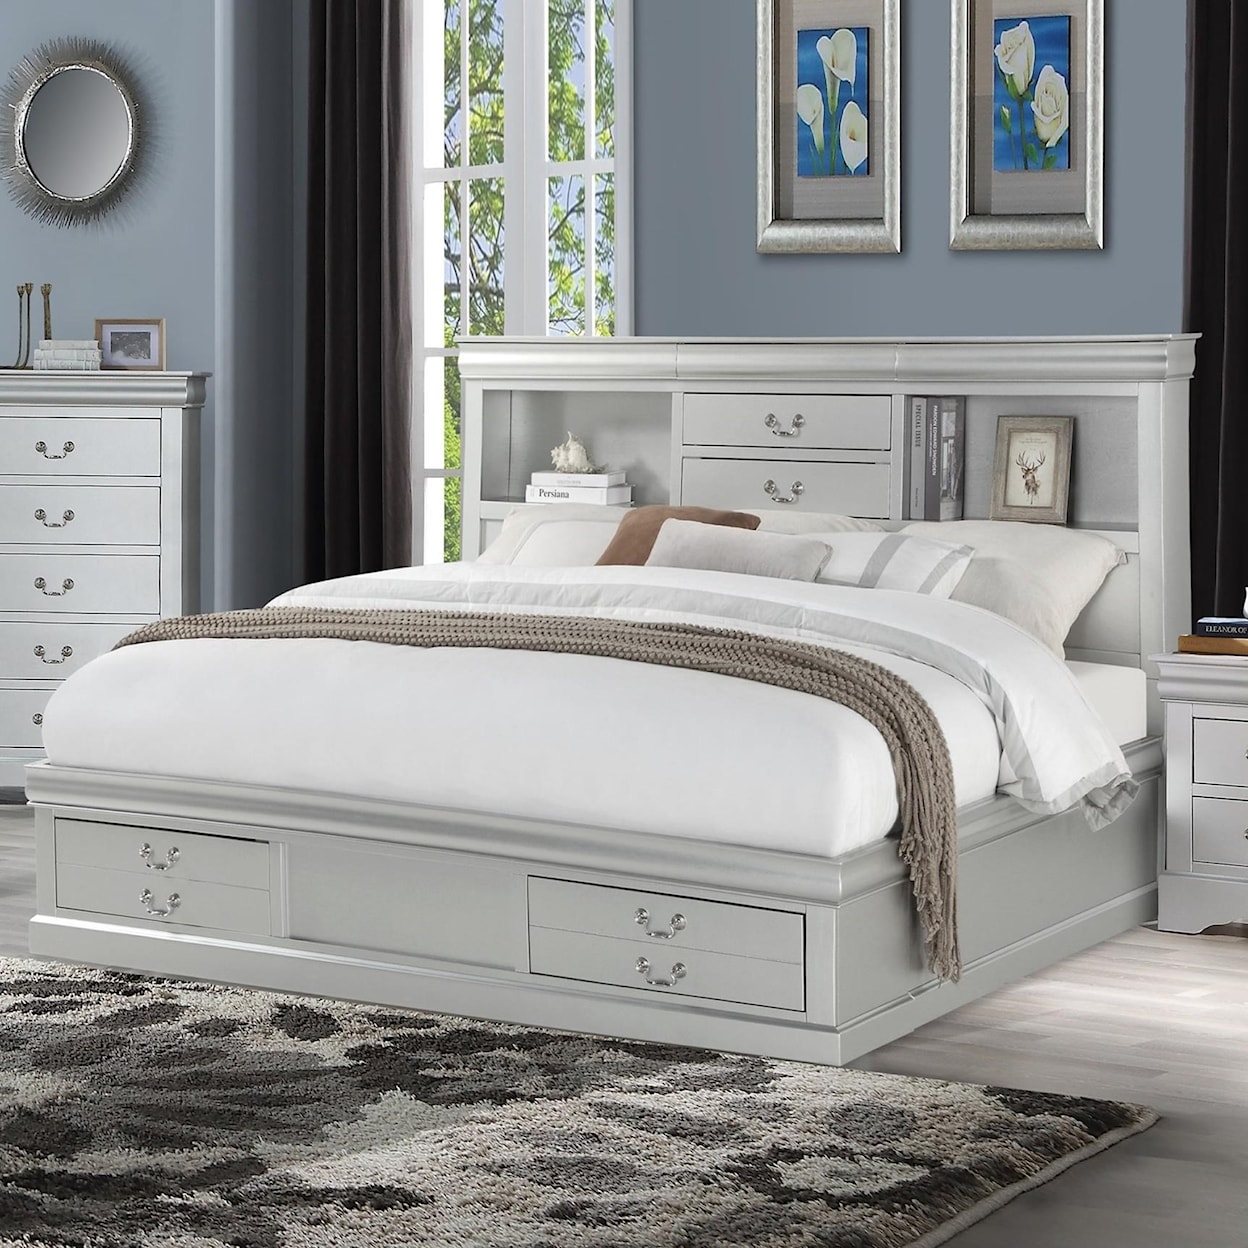 The Louis Philippe Queen Bed & 1 Nightstand & Dresser & Mirror